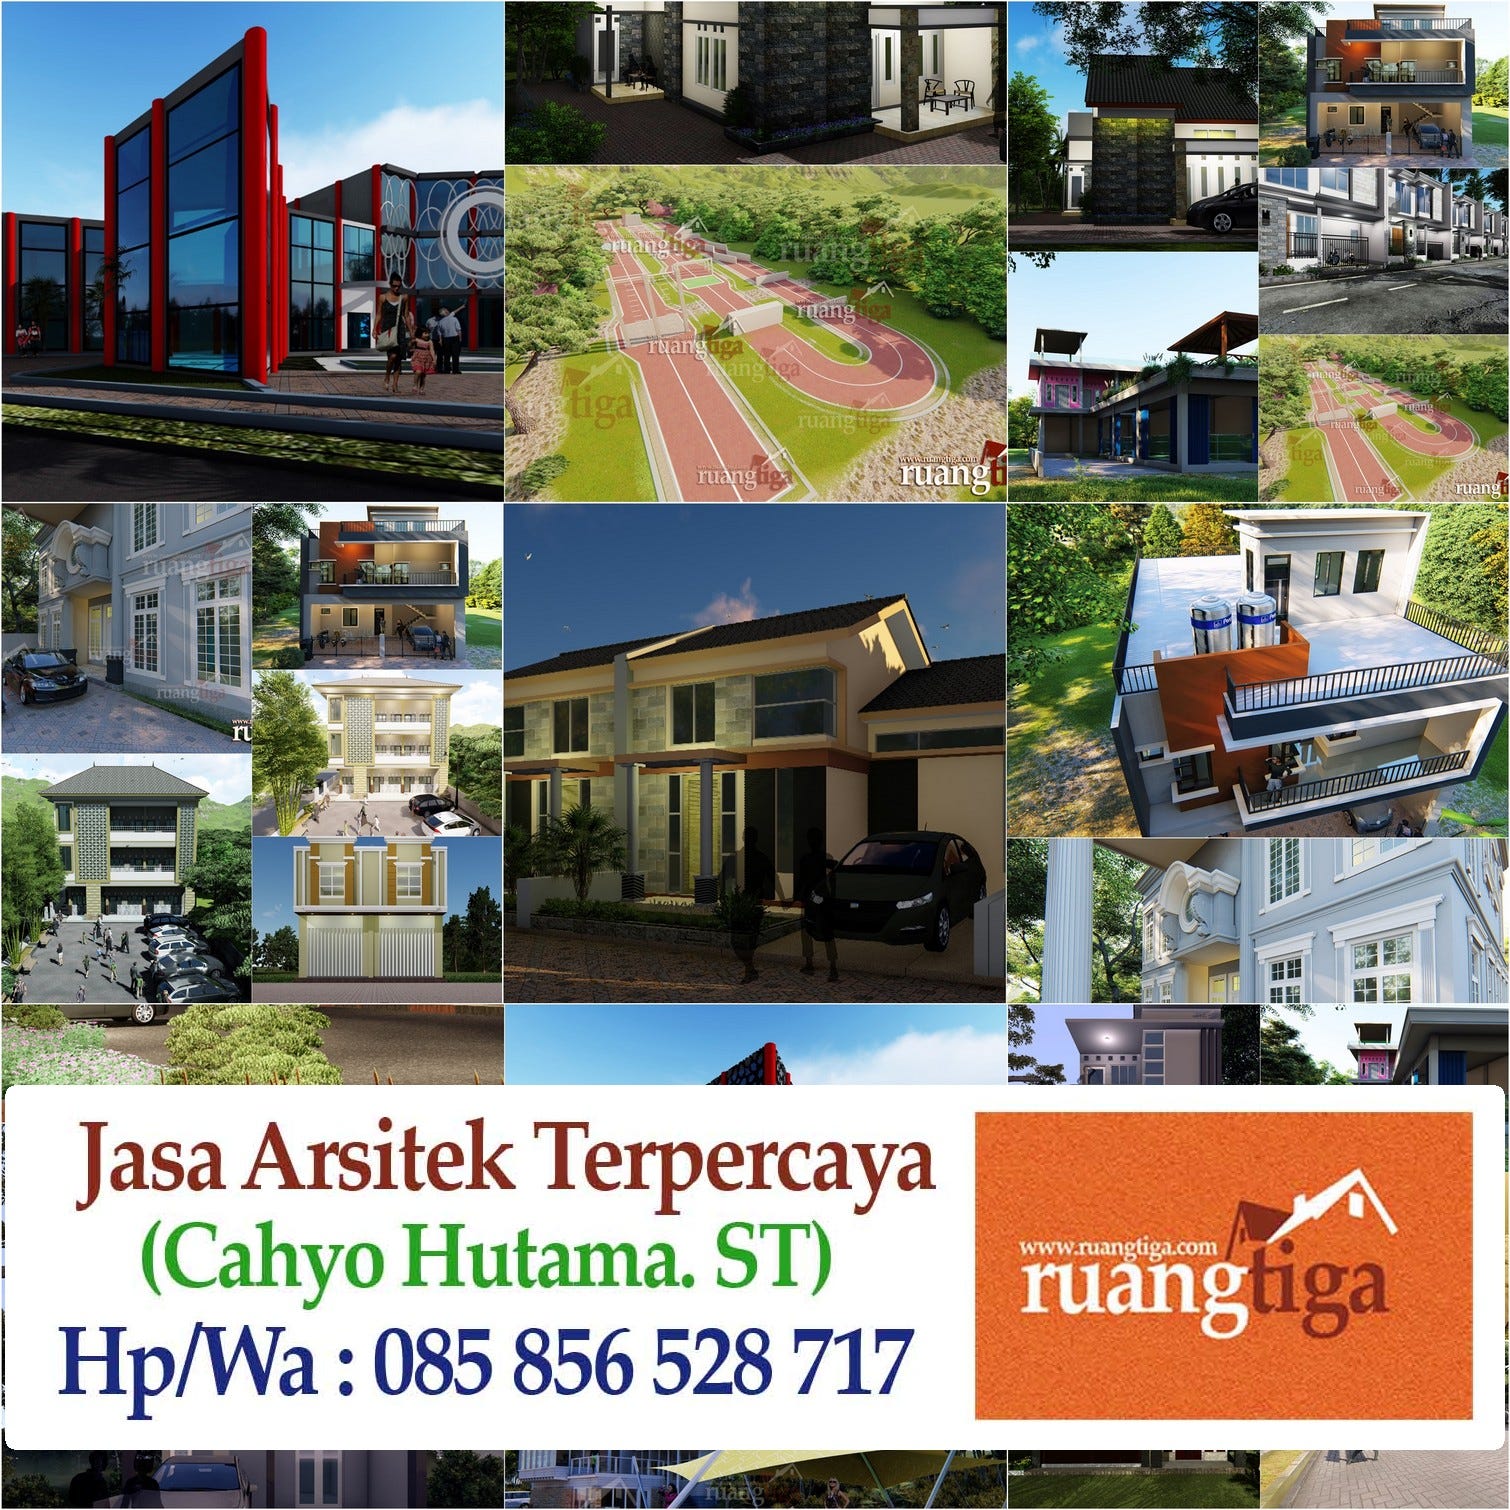 085856528717 Jasa Desain Interior Rumah Bandung Jasa Desain